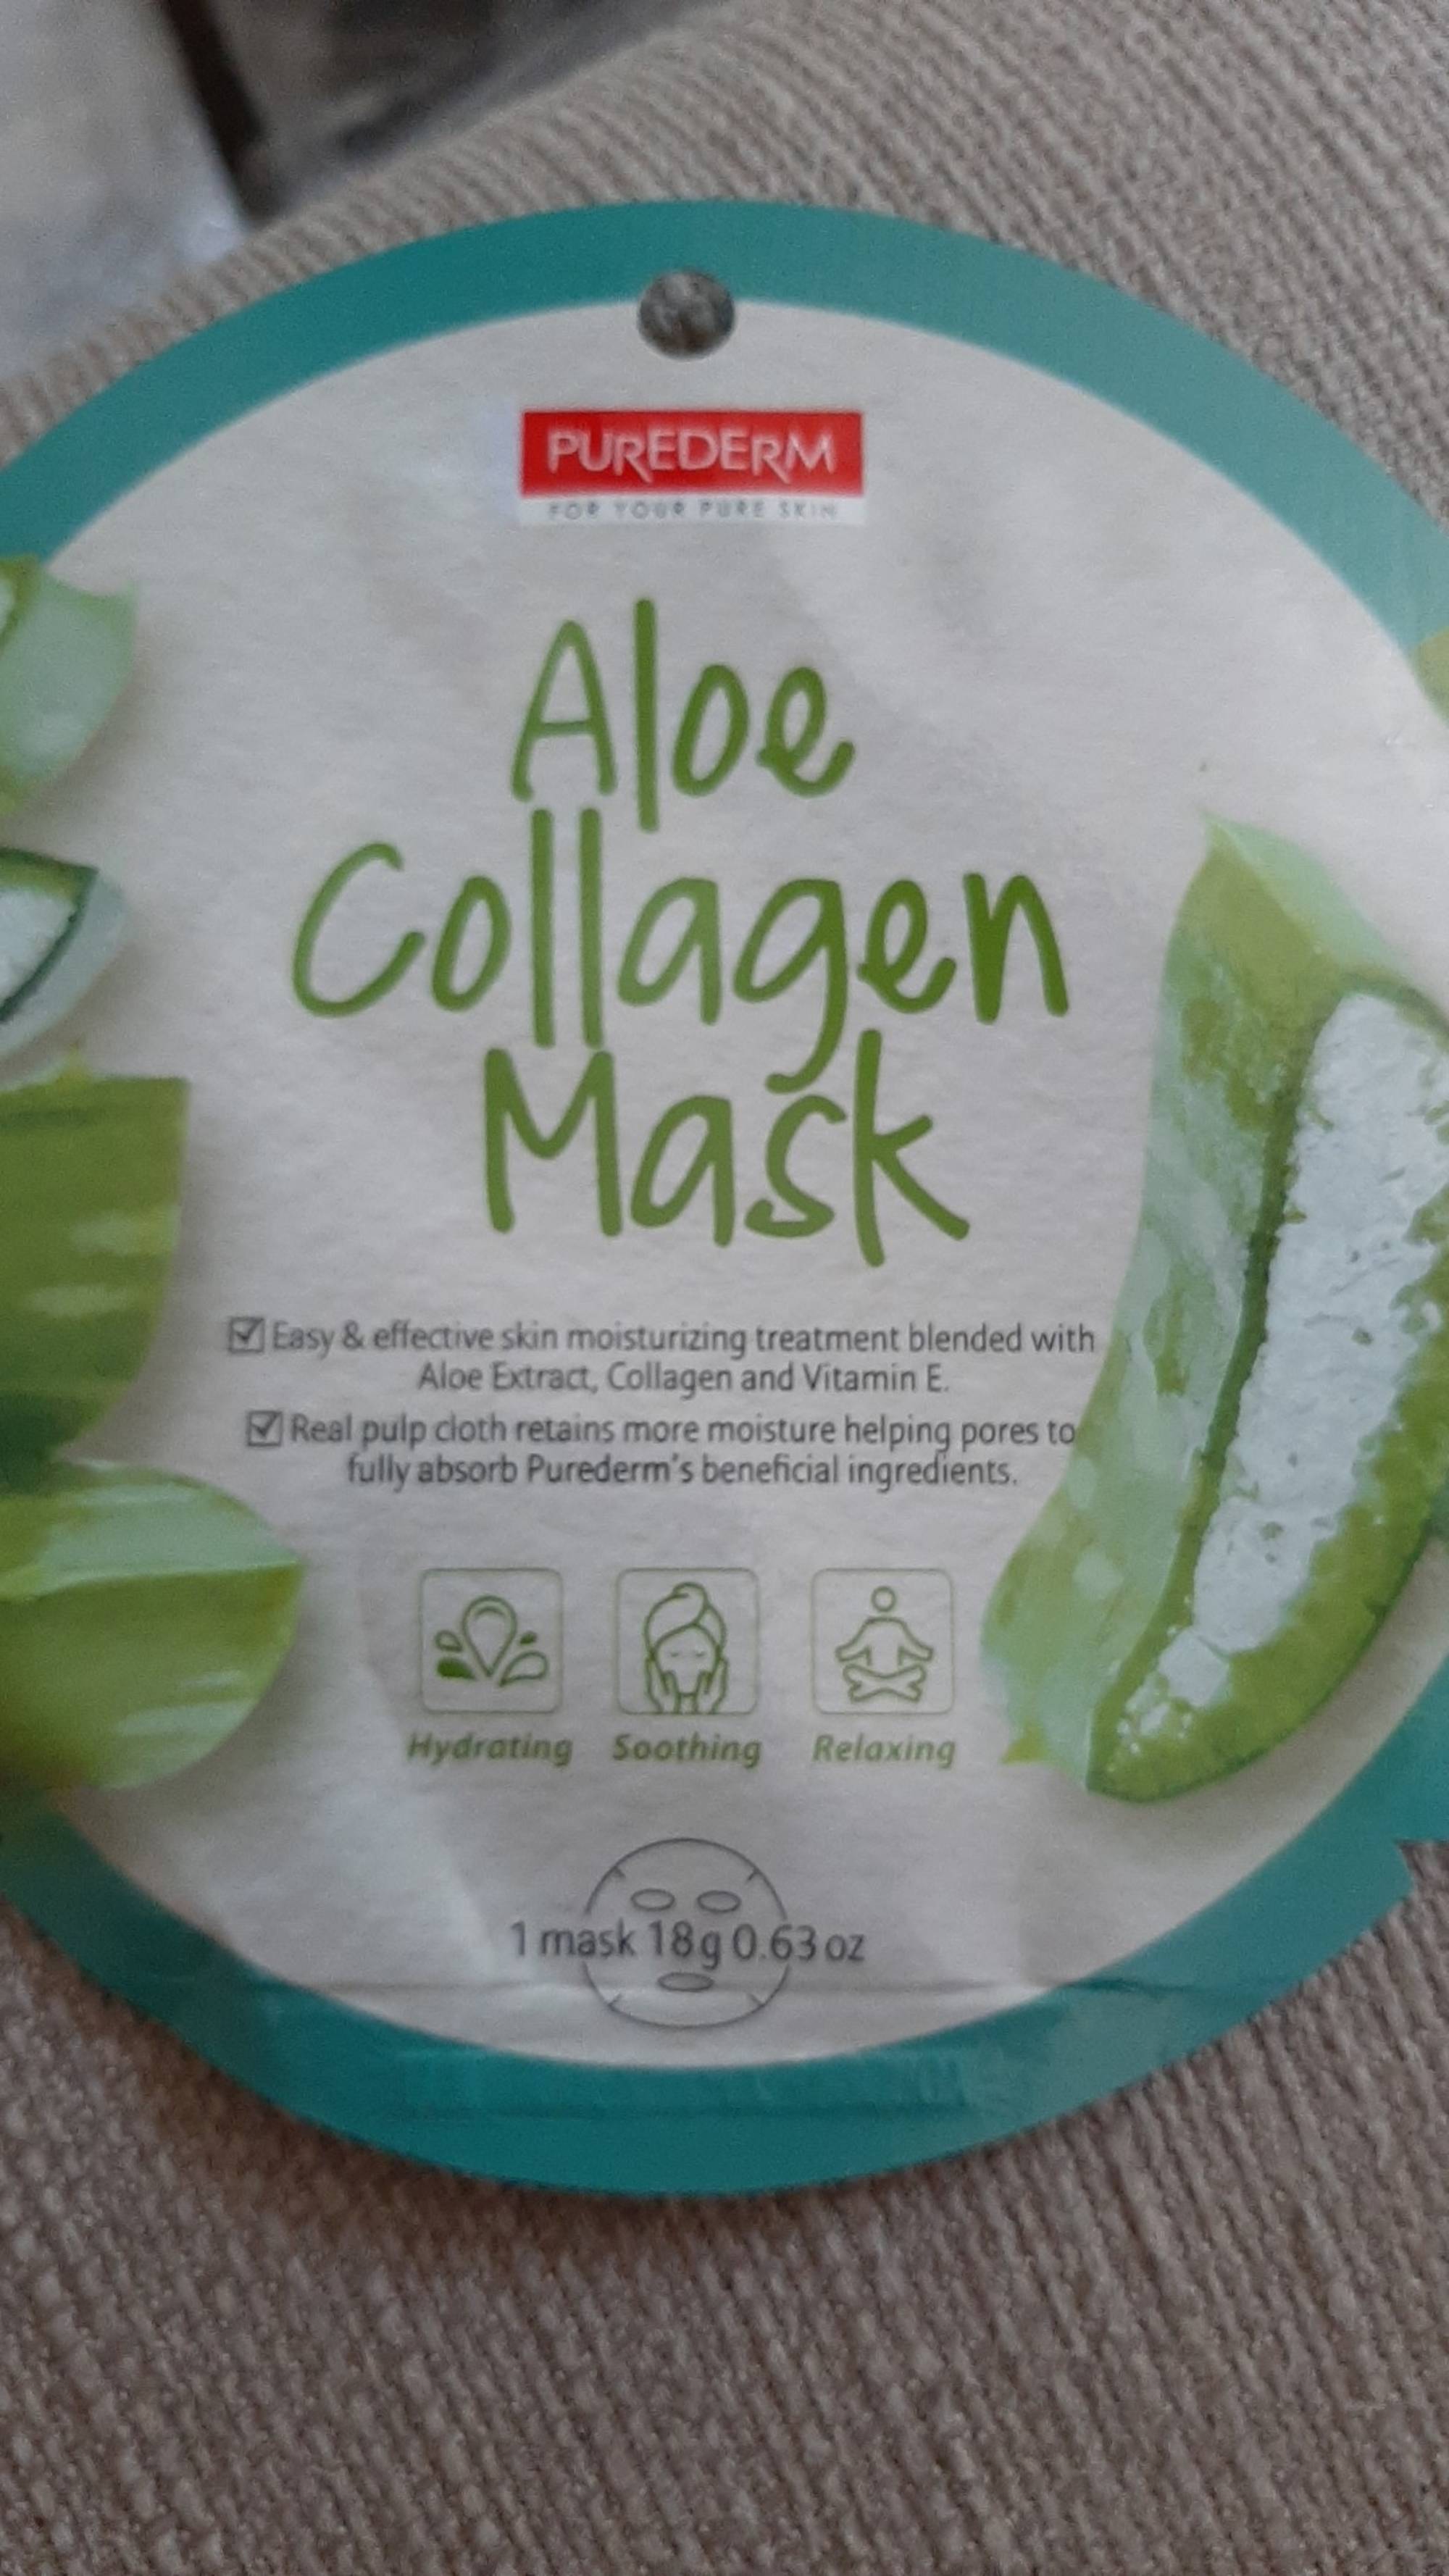 PUREDERM - Aloe collagen mask